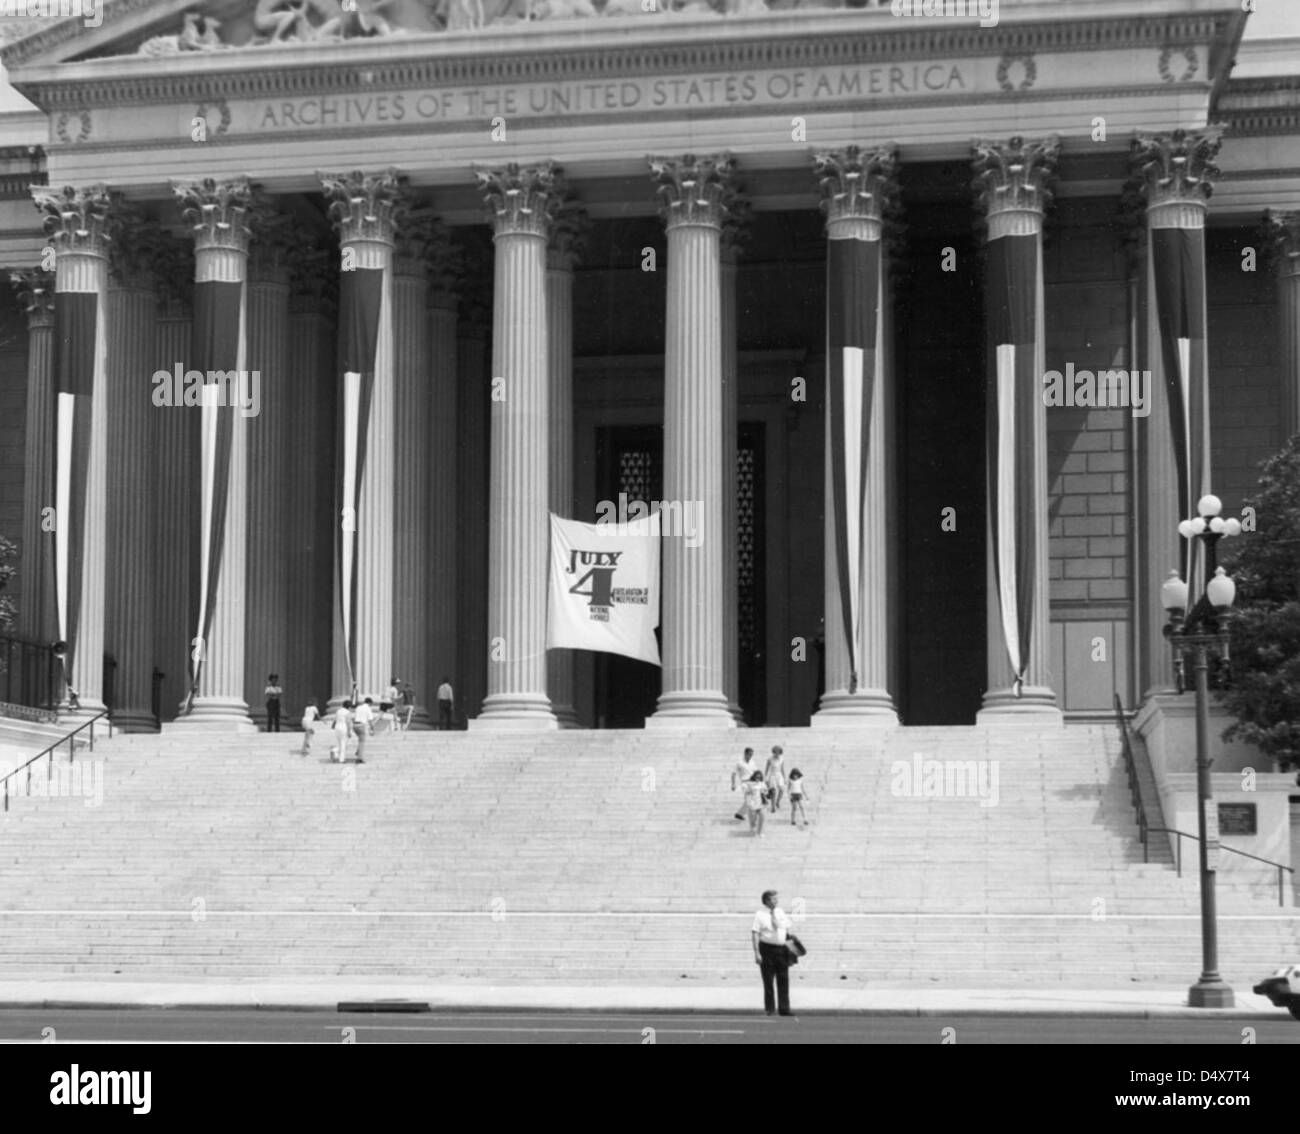 Il 4 luglio cerimonie presso gli archivi nazionali, 1973 Foto Stock